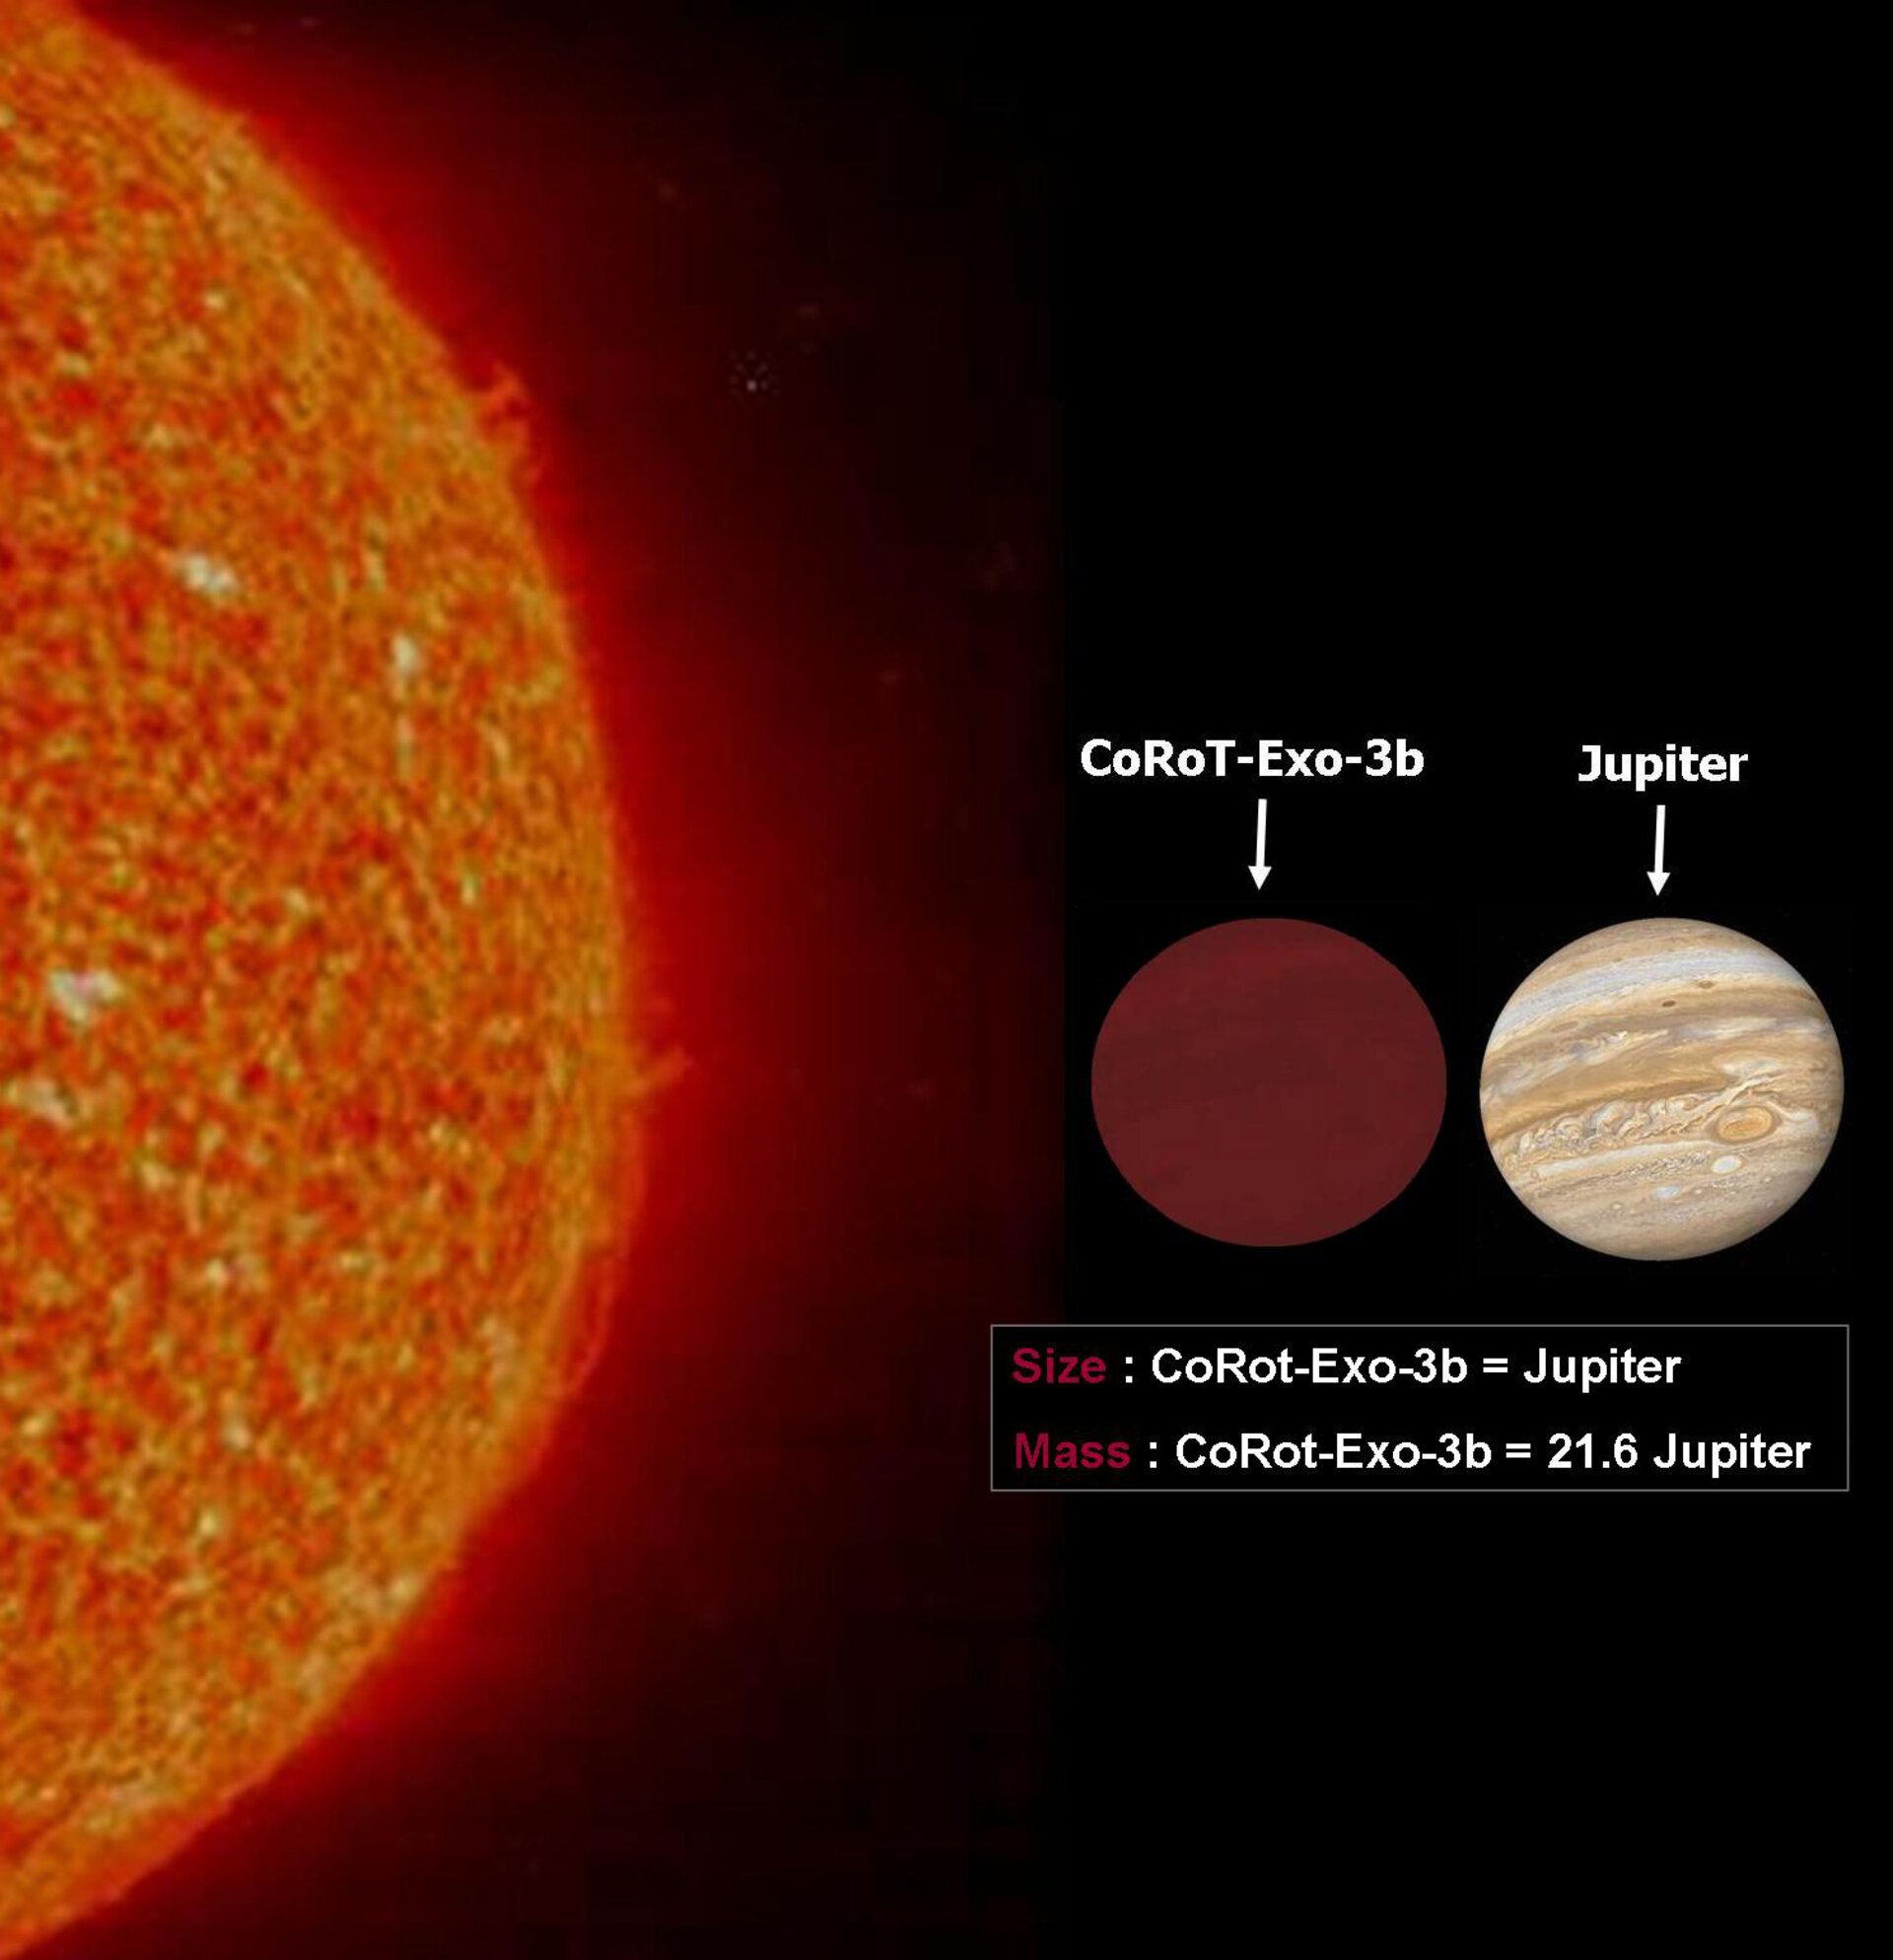 The Sun, COROT-exo-3b and Jupiter